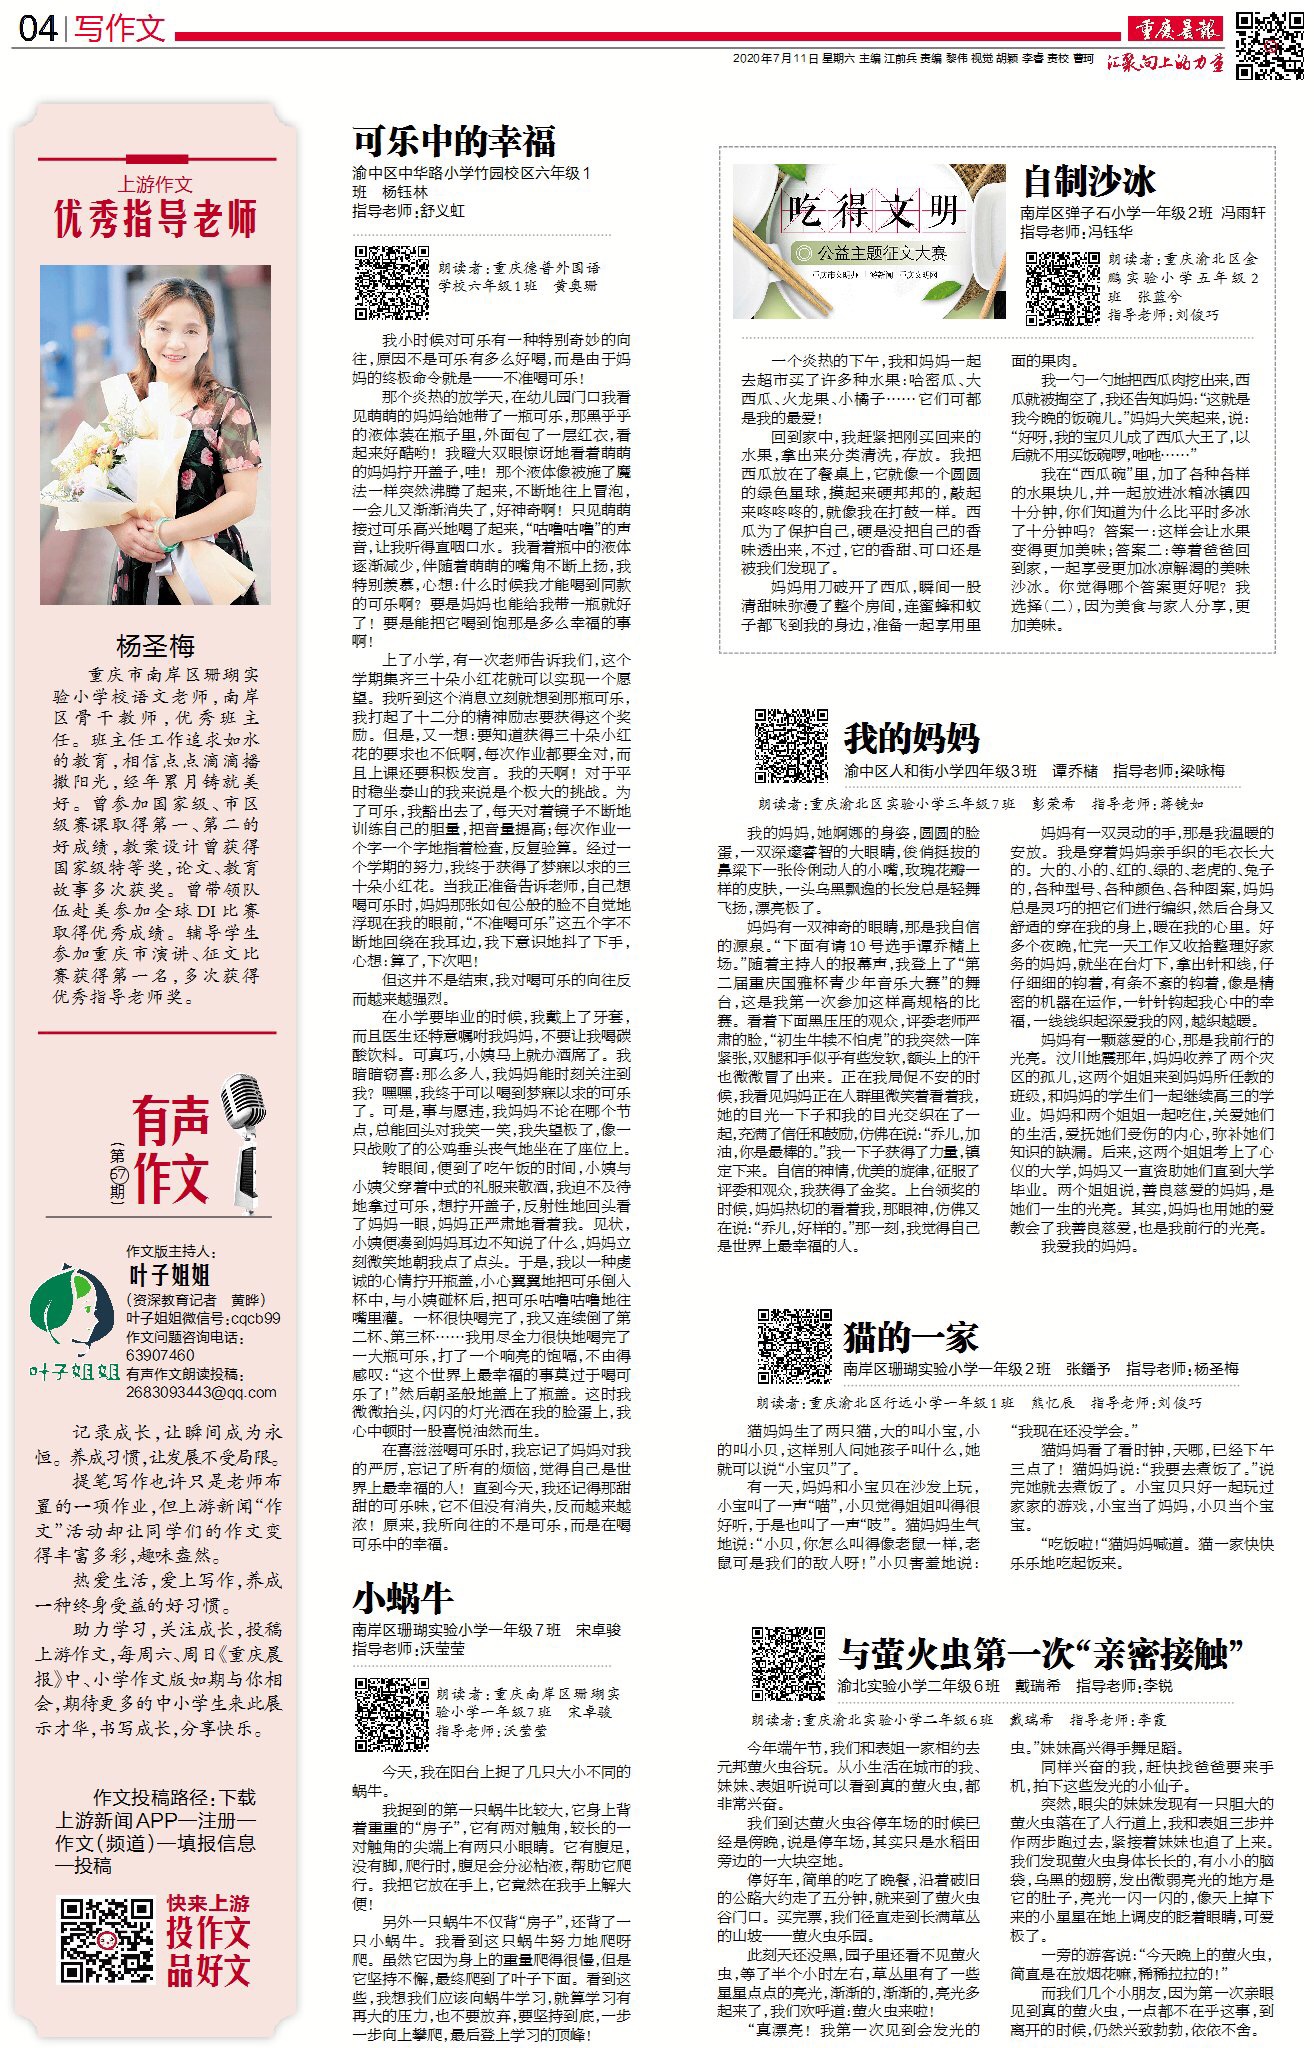 作文之星 周 作品集锦 19 年7月11日 重庆晨报 4版 上游新闻 汇聚向上的力量